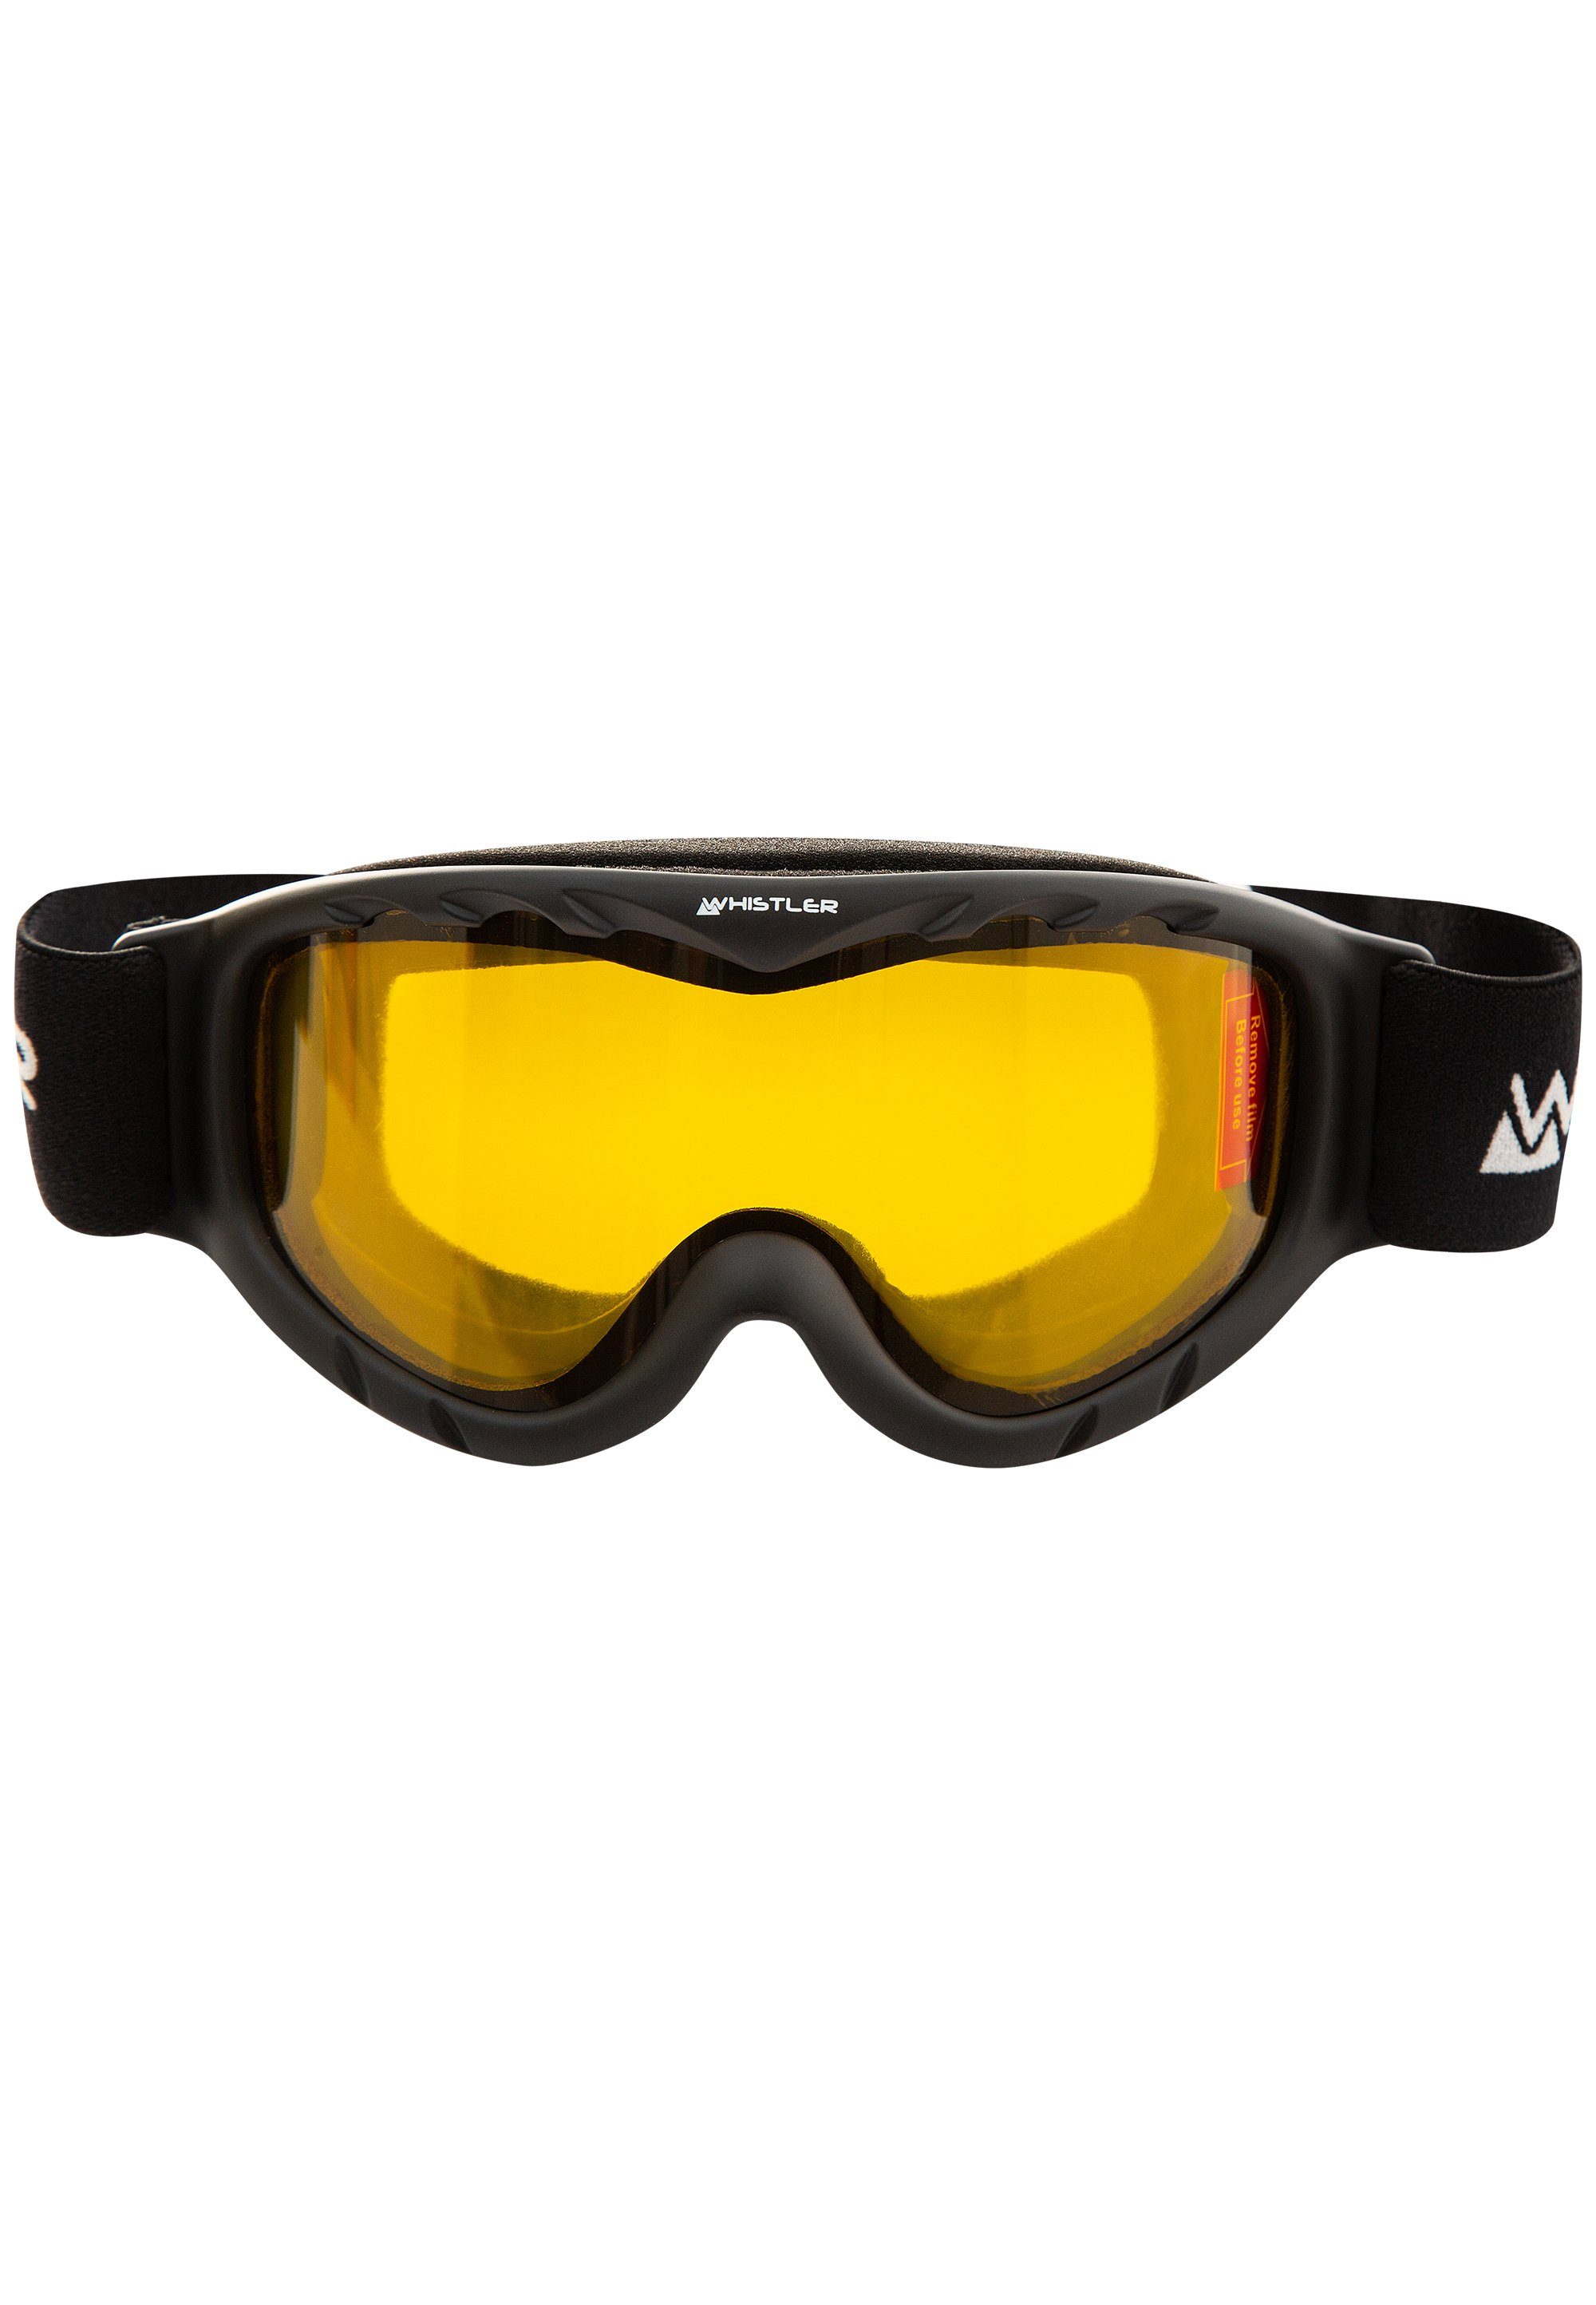 WHISTLER Skibrille WS300 Jr. Ski schwarz mit Anti-Fog-Beschichtung Goggle